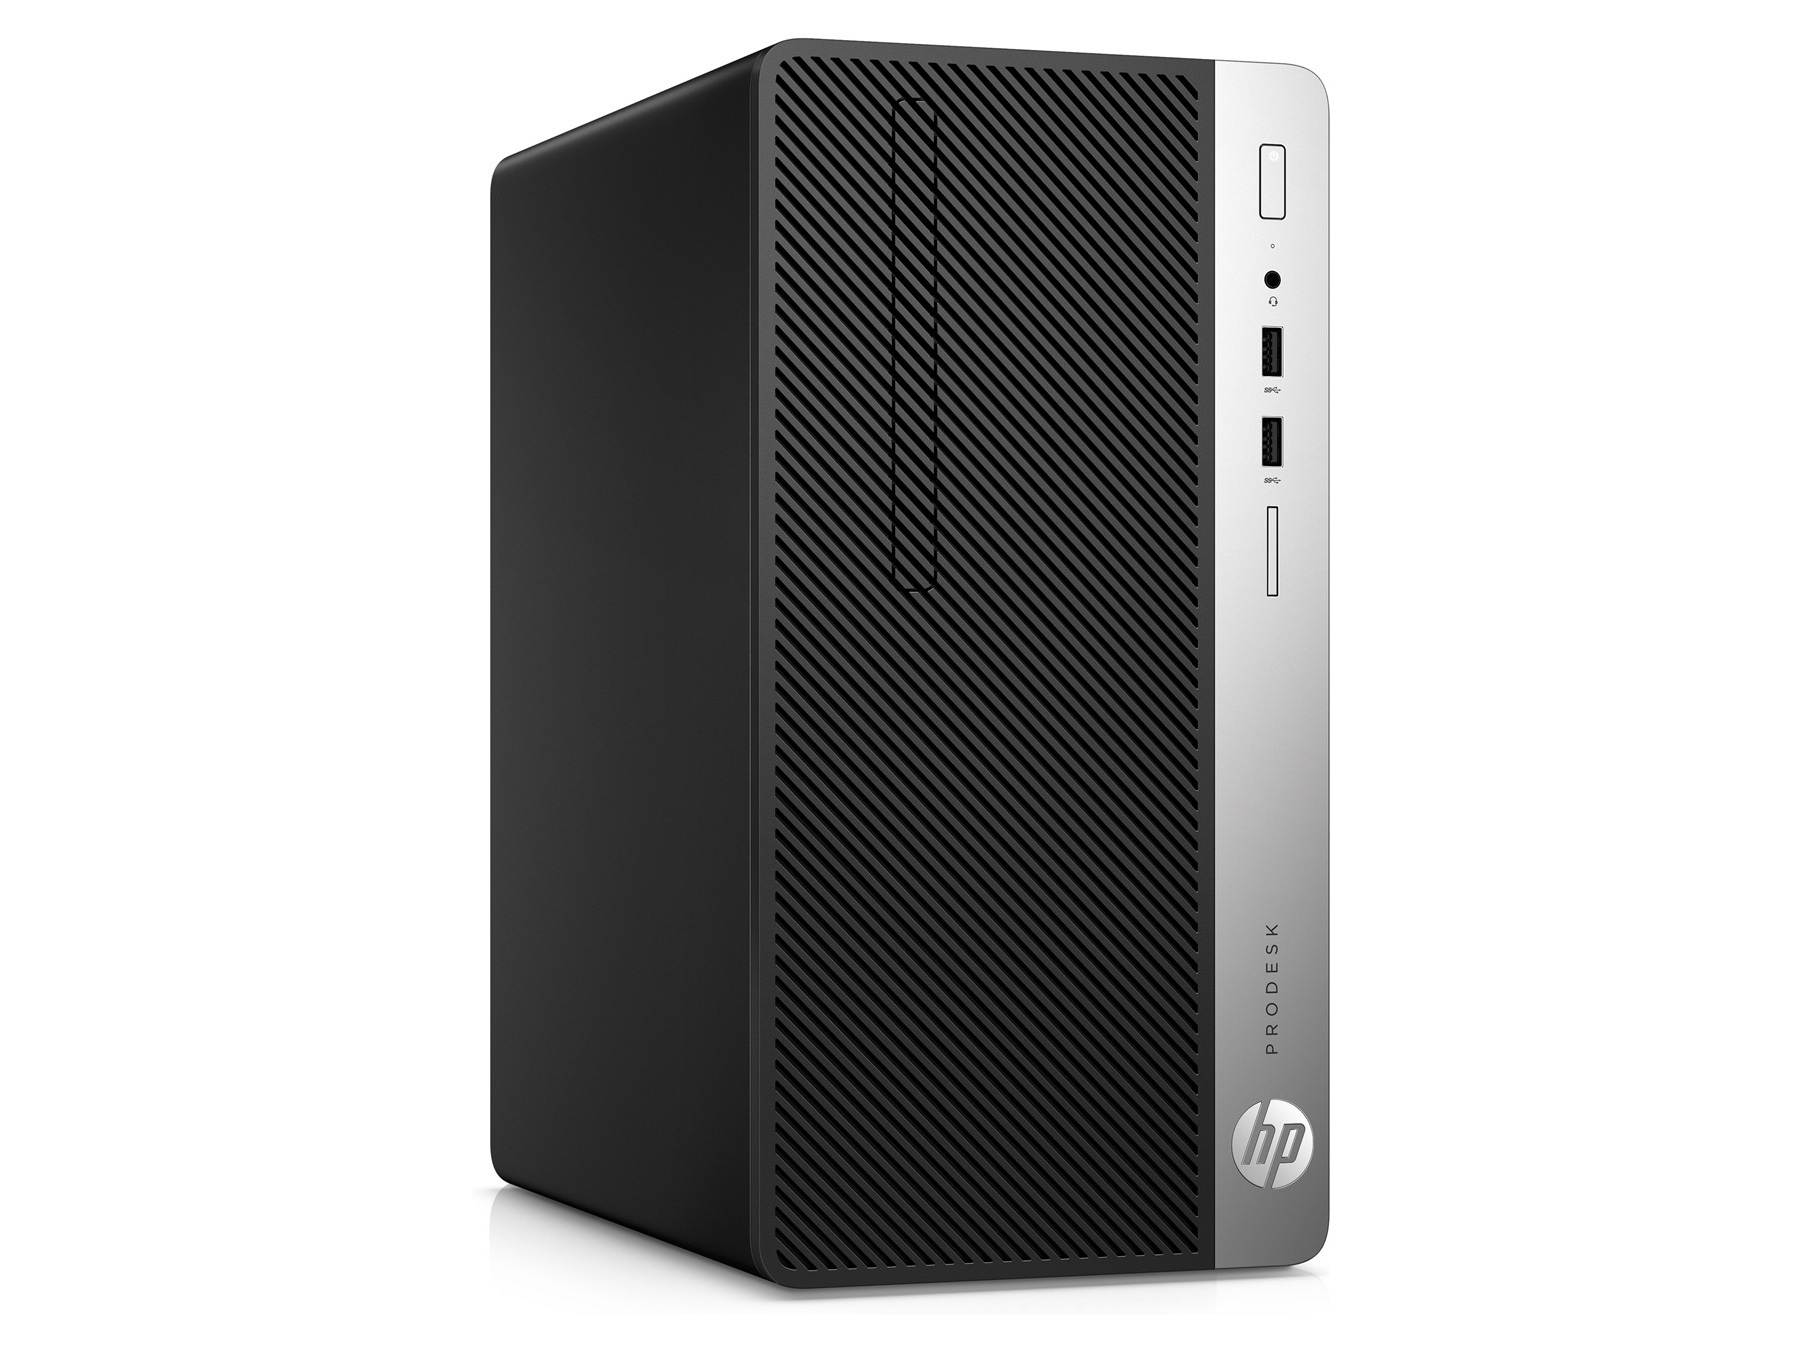 Máy tính để bàn HP ProDesk 400 G5 4ST29PA - Intel Core i5-8500, 4GB RAM, HDD 1TB, Intel UHD Graphics 630